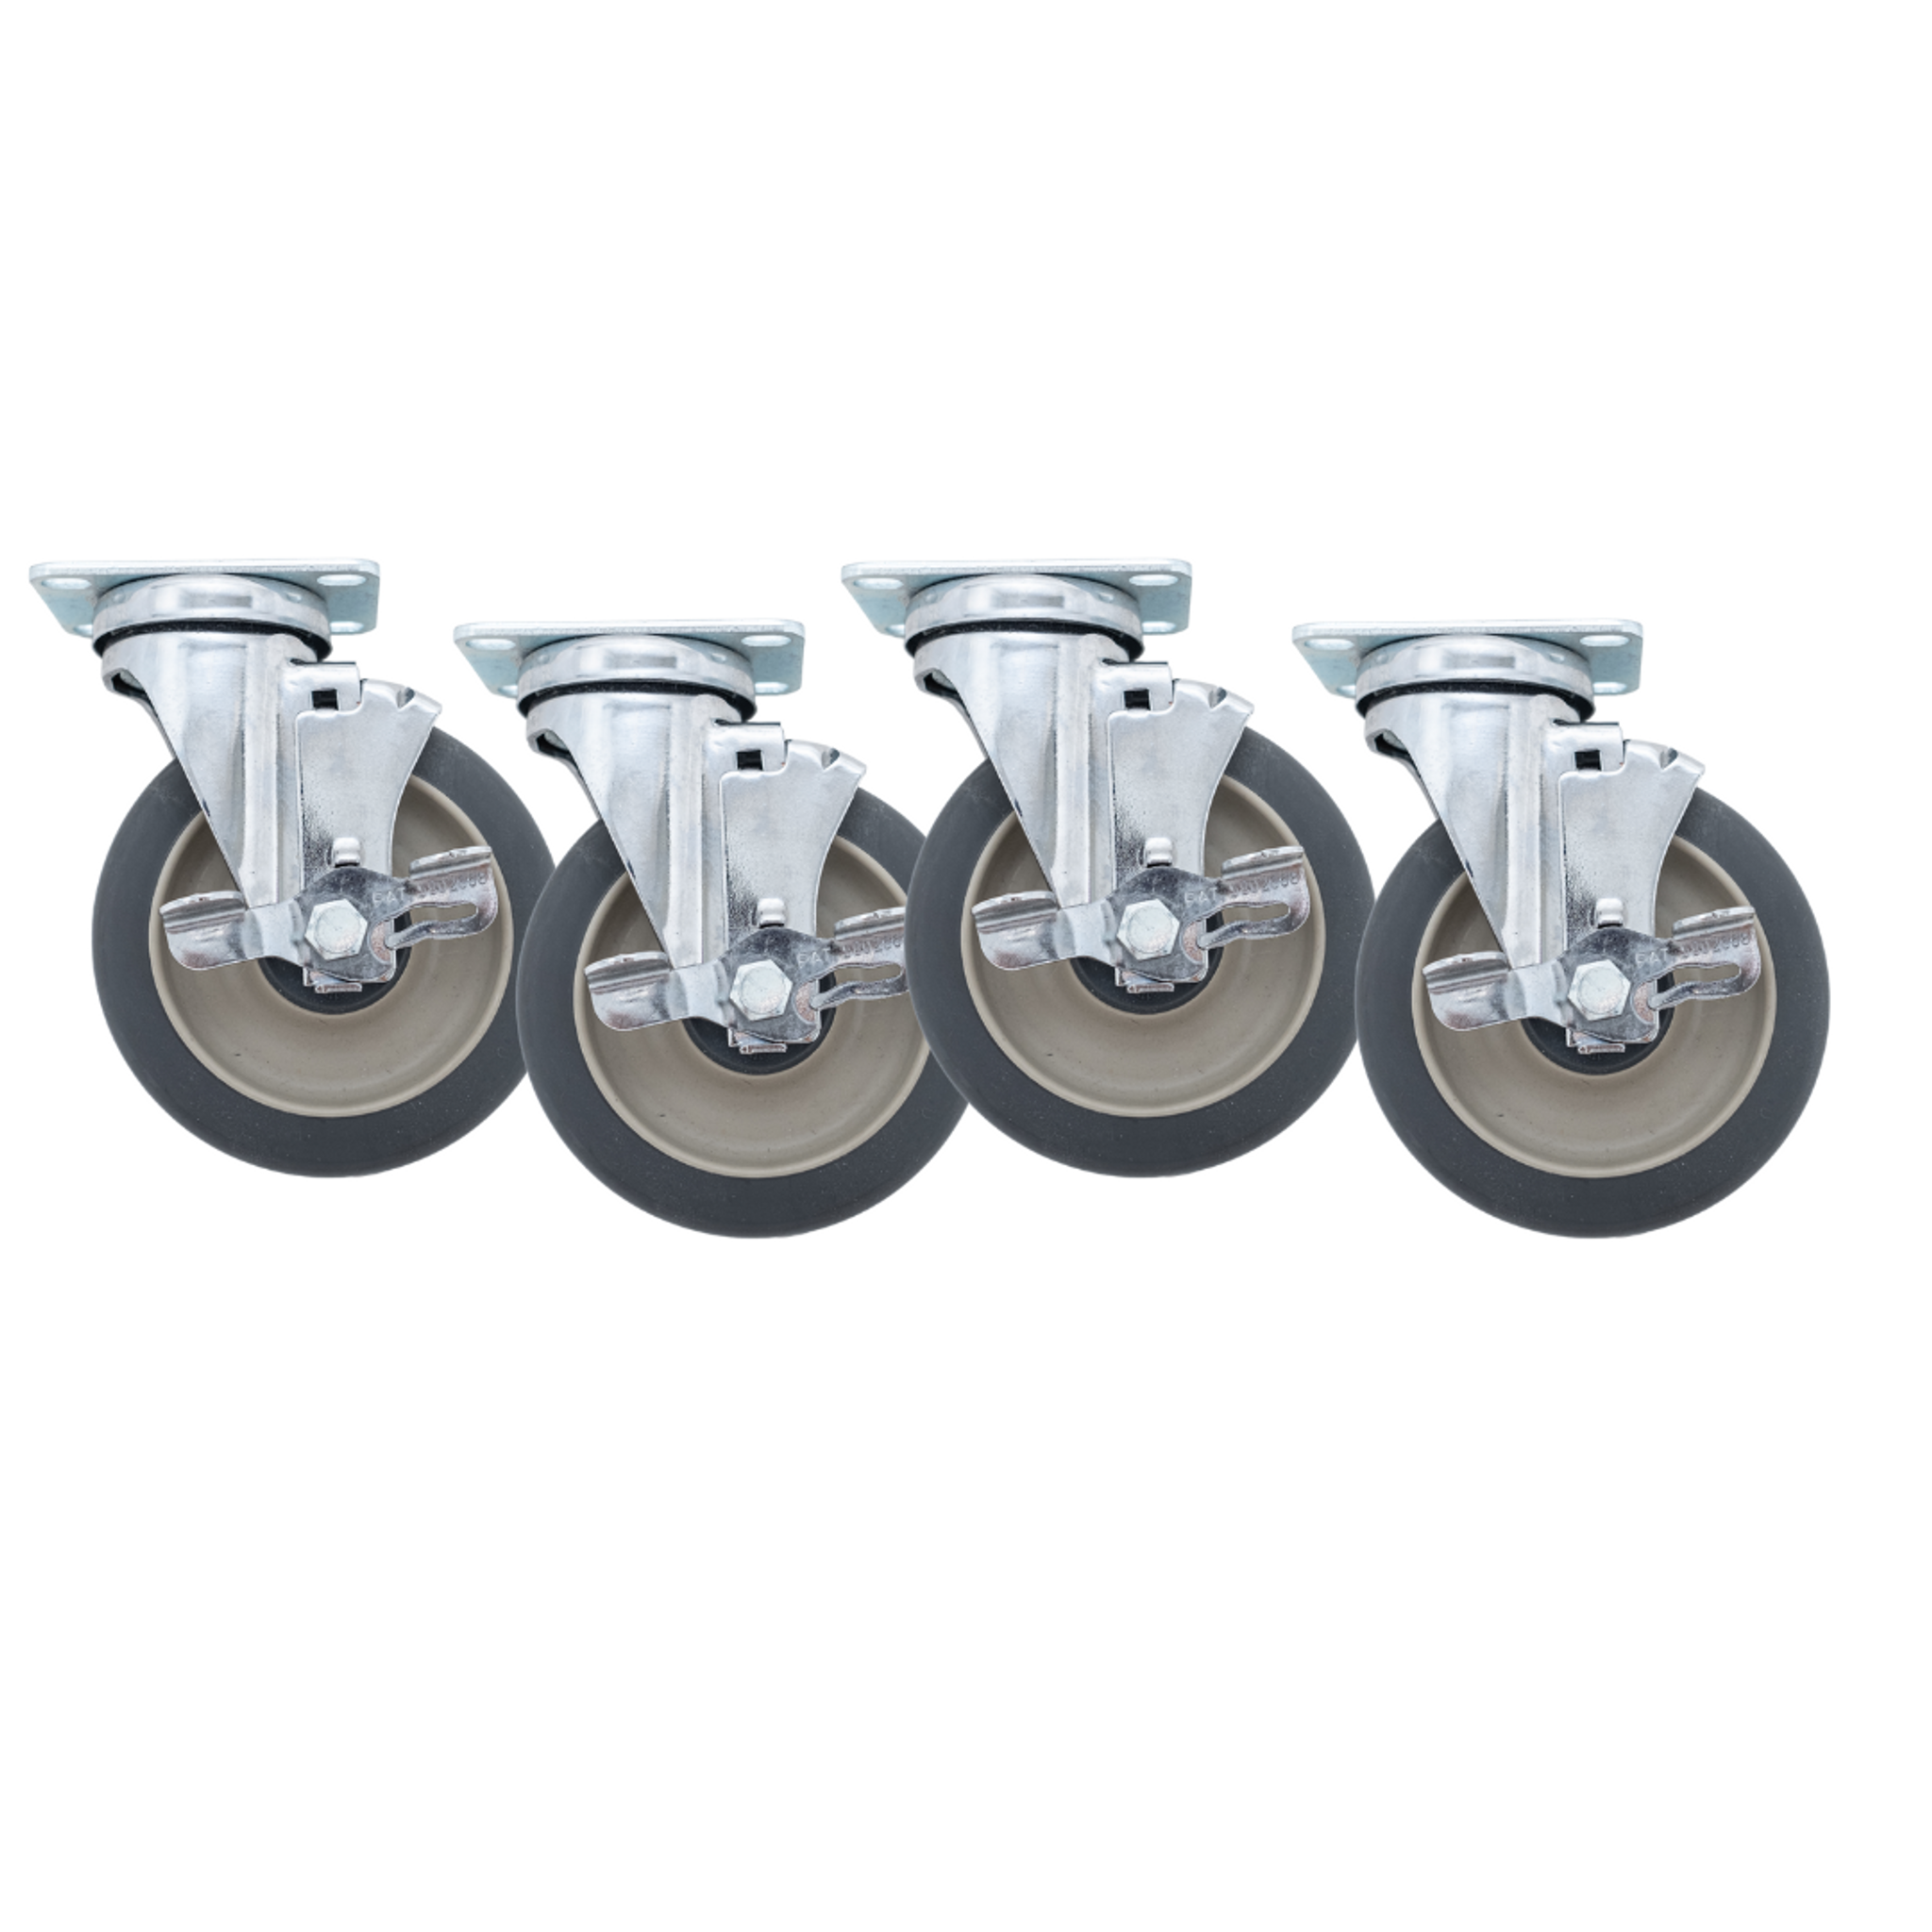 Linco 4 Heavy Duty Steel Swivel Caster Wheels, Set of 4 Wheels Cart  Swivel Casters with Cast Iron Wheels